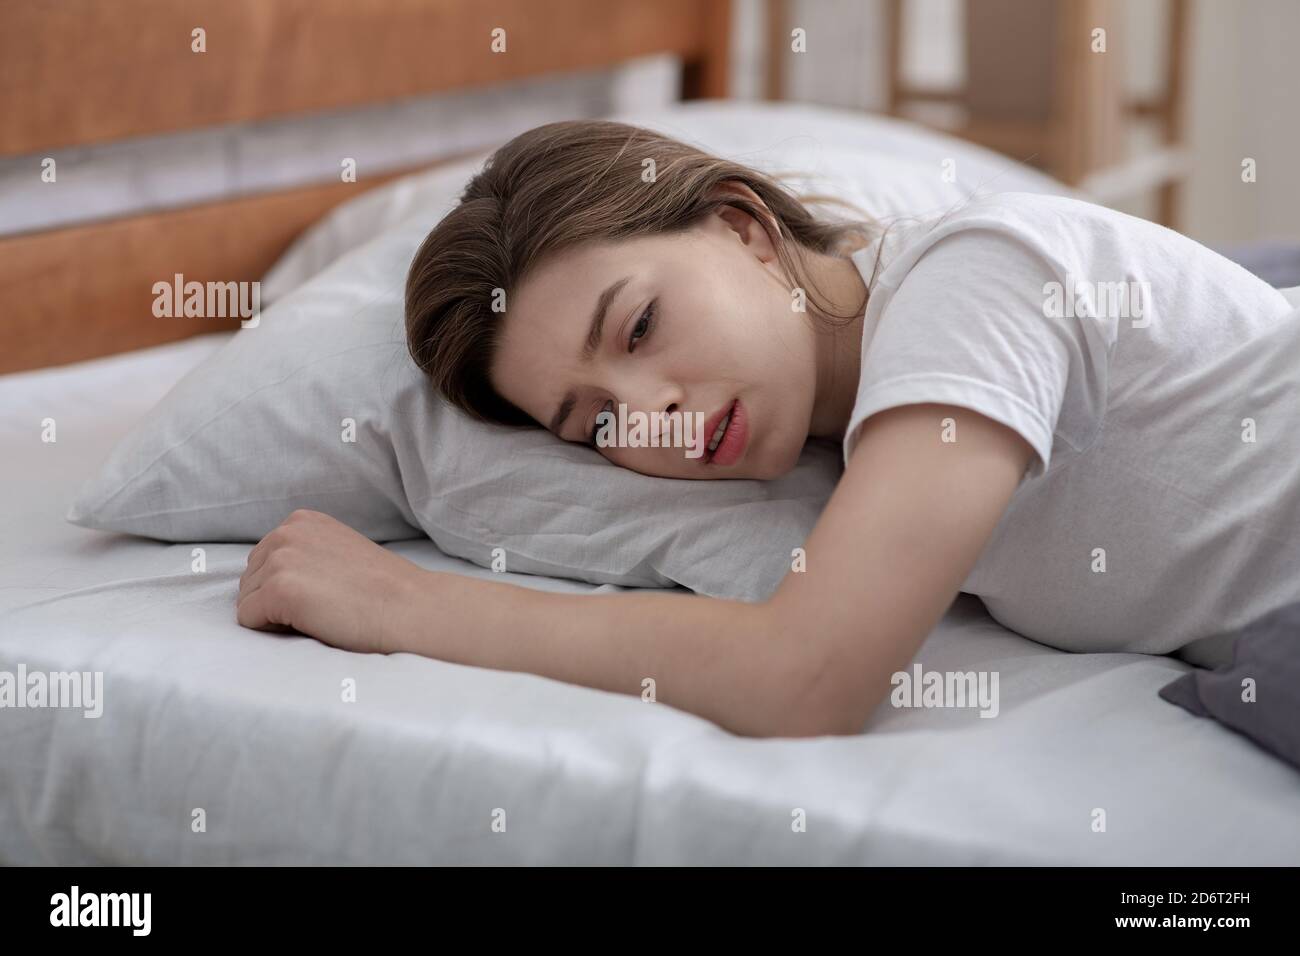 Une jeune femme couché seule dans son lit, pleurant de la perte d'un être  cher, souffrant d'une dépression grave Photo Stock - Alamy